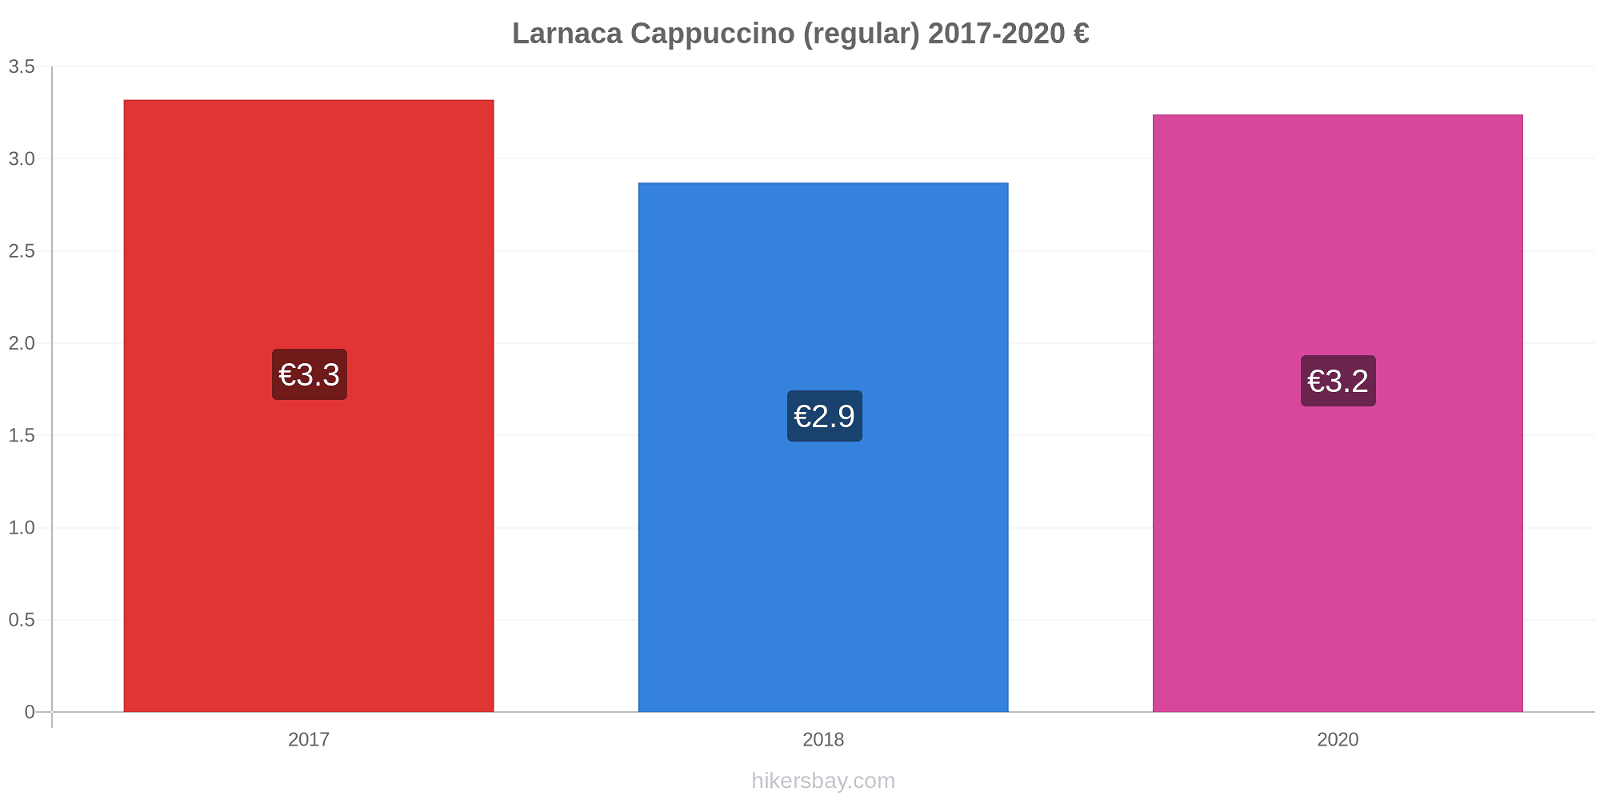 Larnaca price changes Cappuccino (regular) hikersbay.com